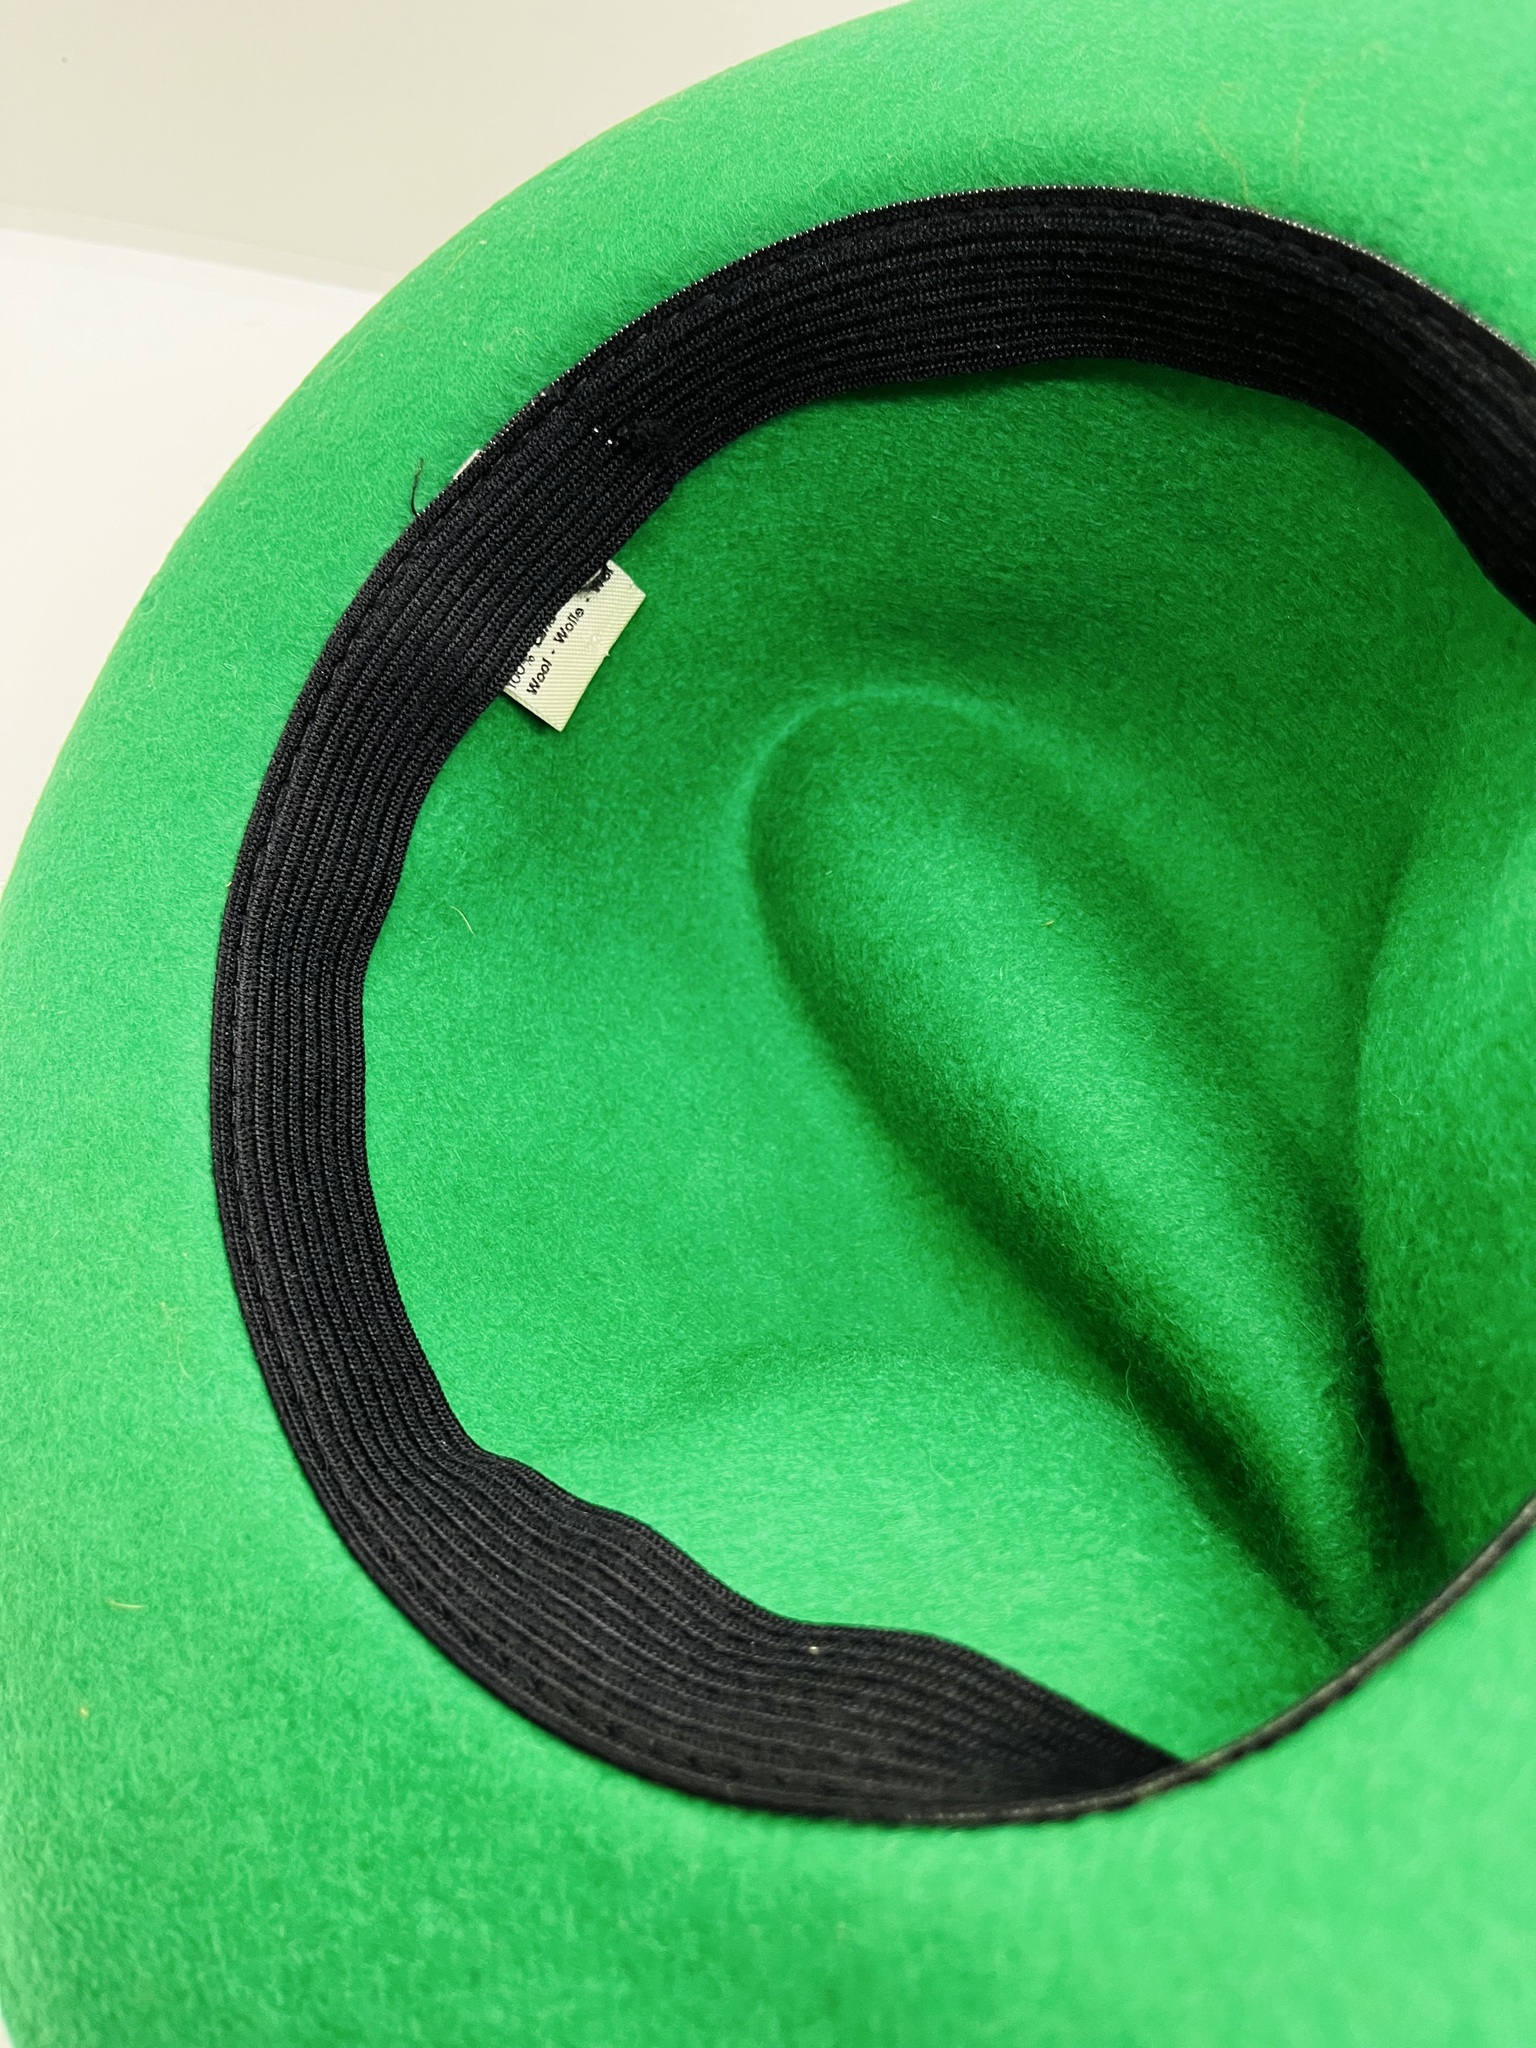 Grön hatt i ull